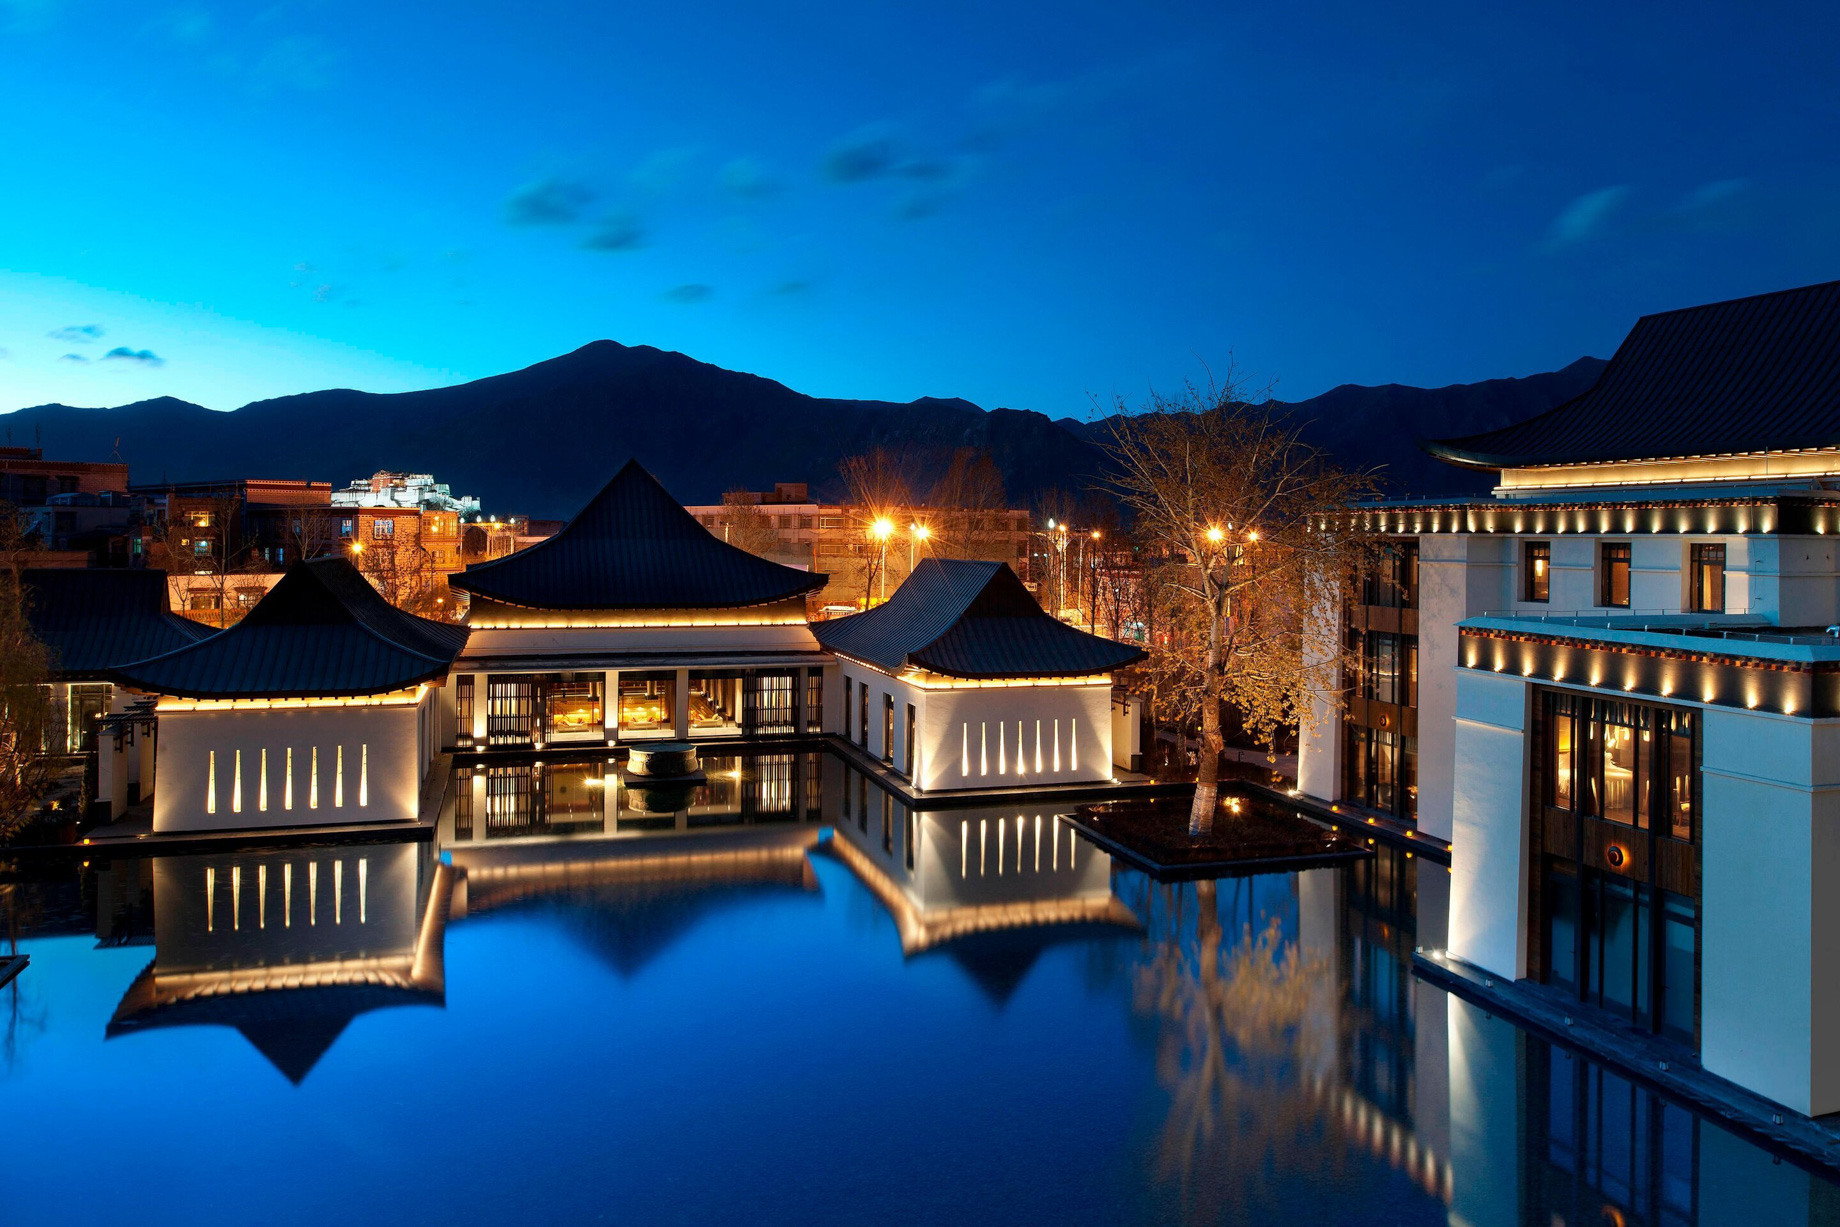 The St. Regis Lhasa Luxury Resort – Lhasa, Xizang, China – Resort Lake View Night